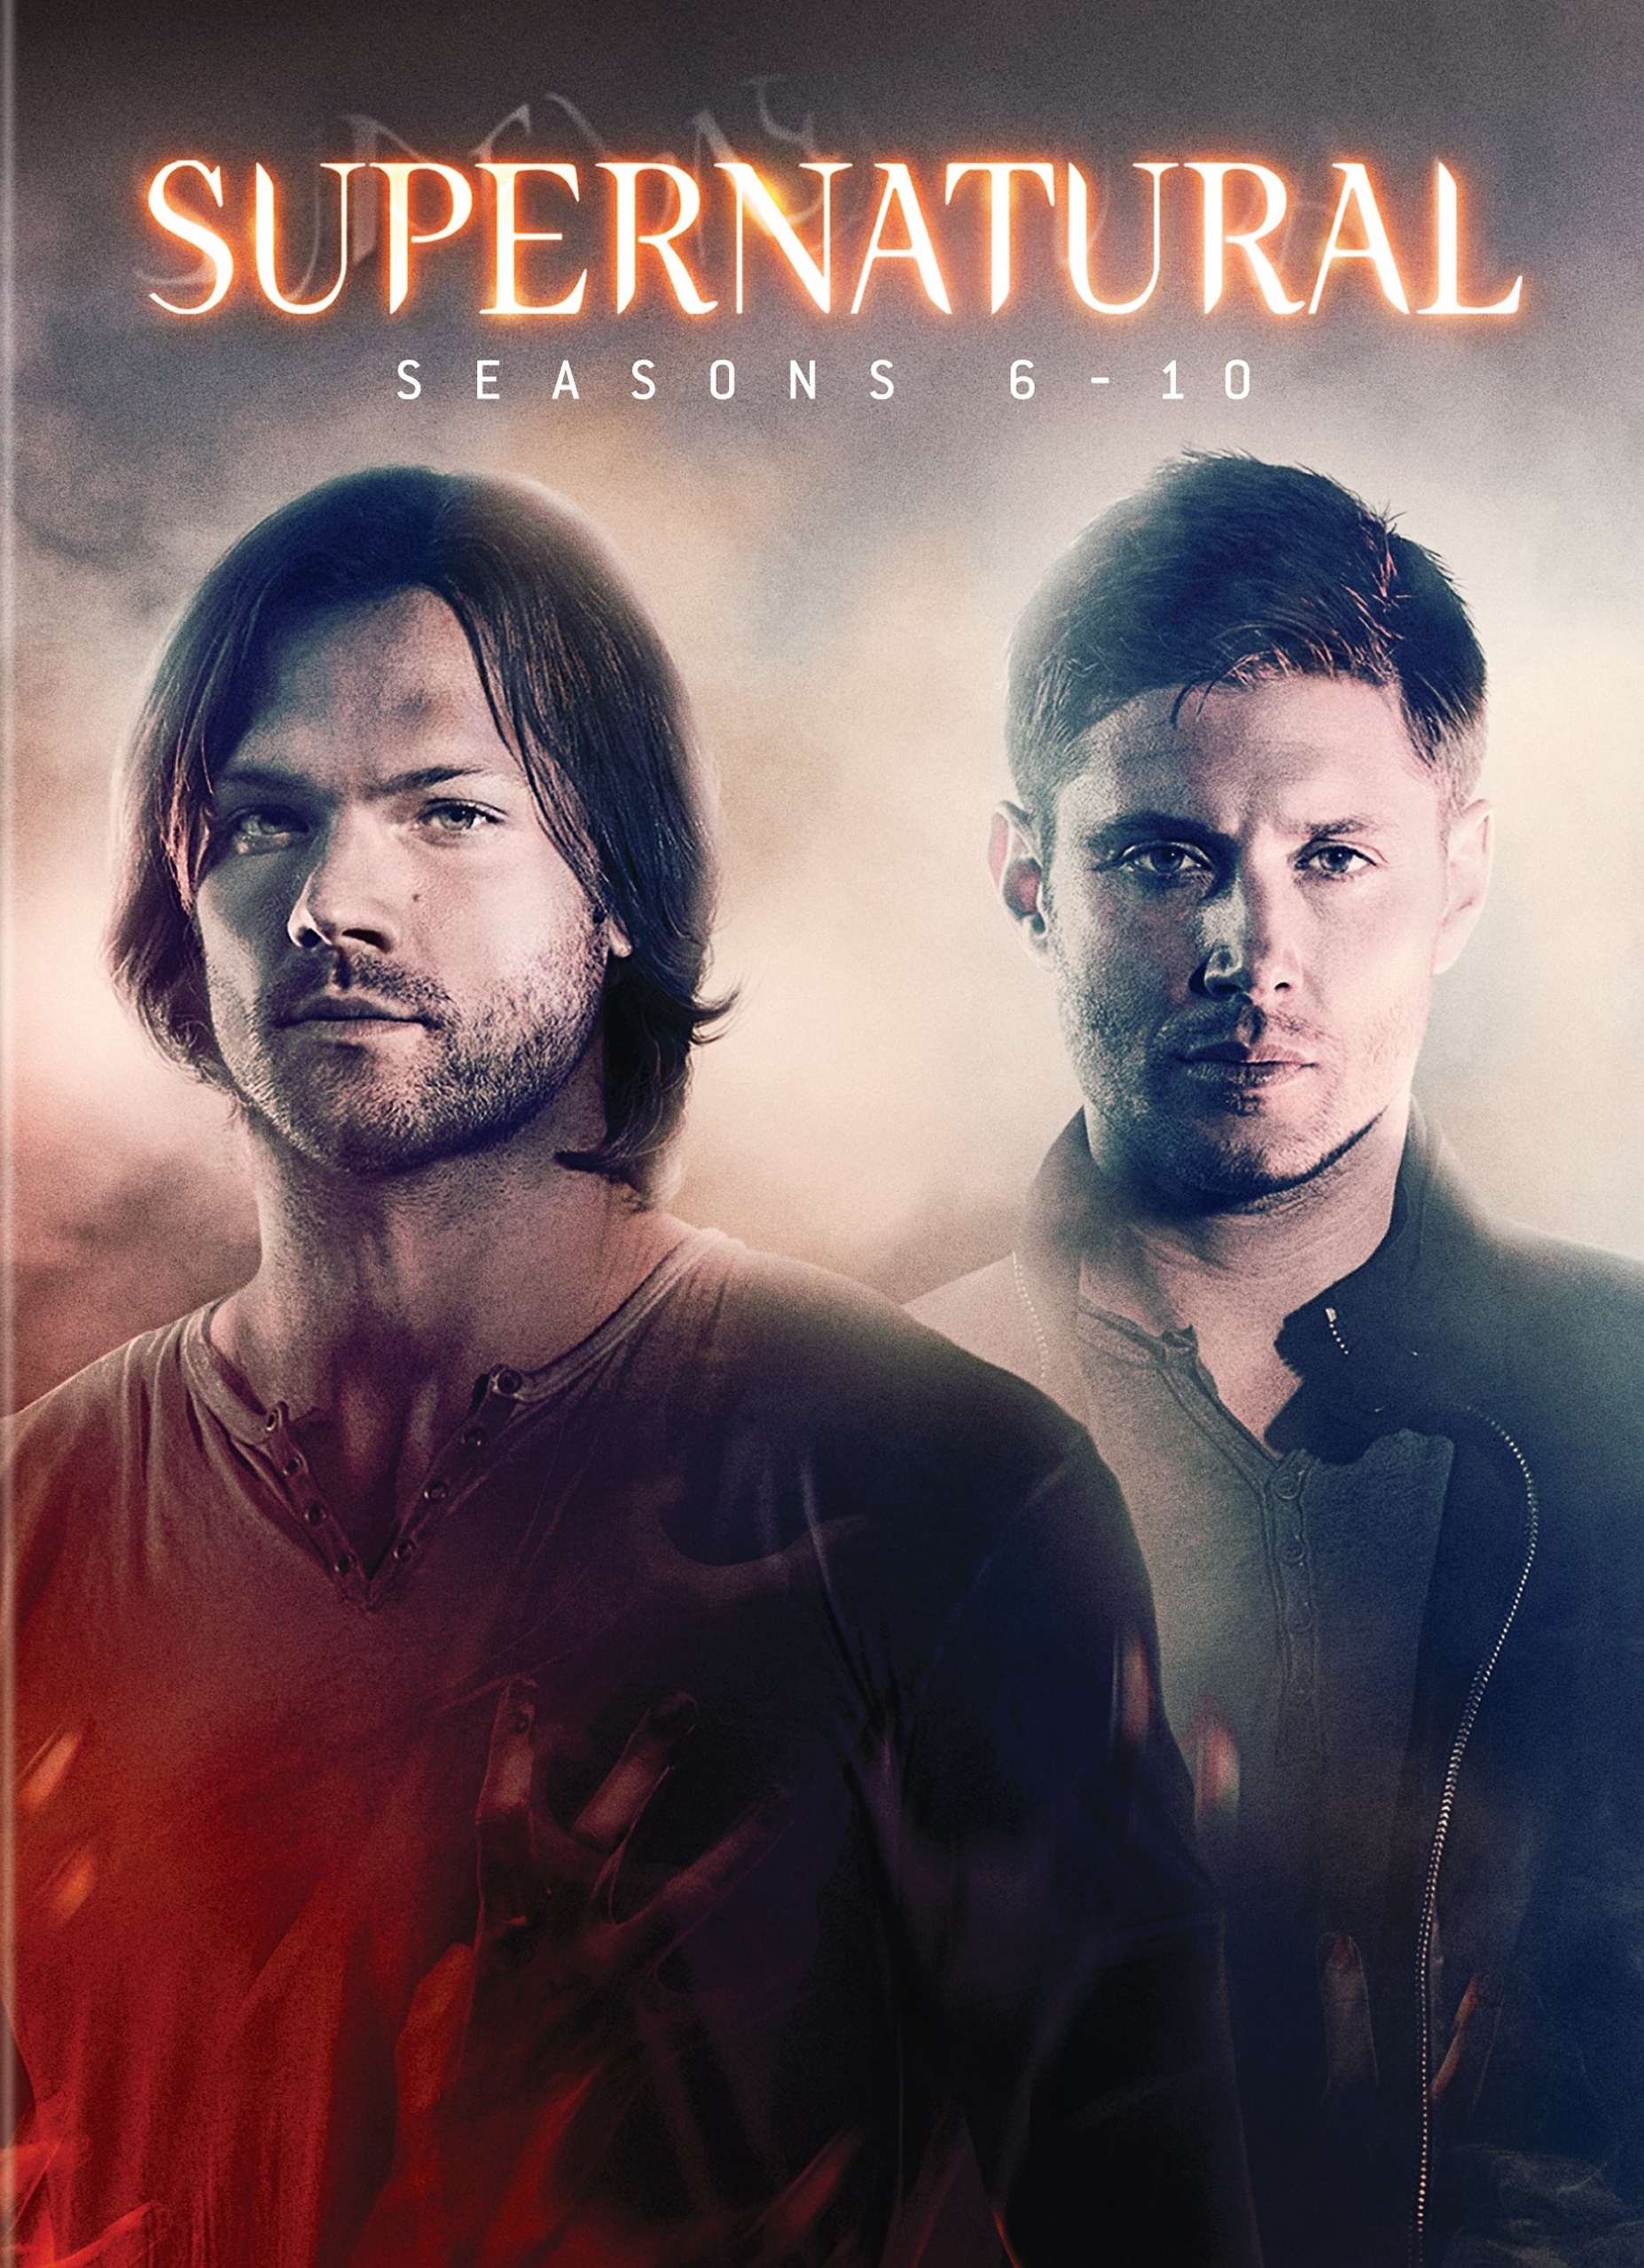 Supernatural - Saison 9 (6 DVD) 